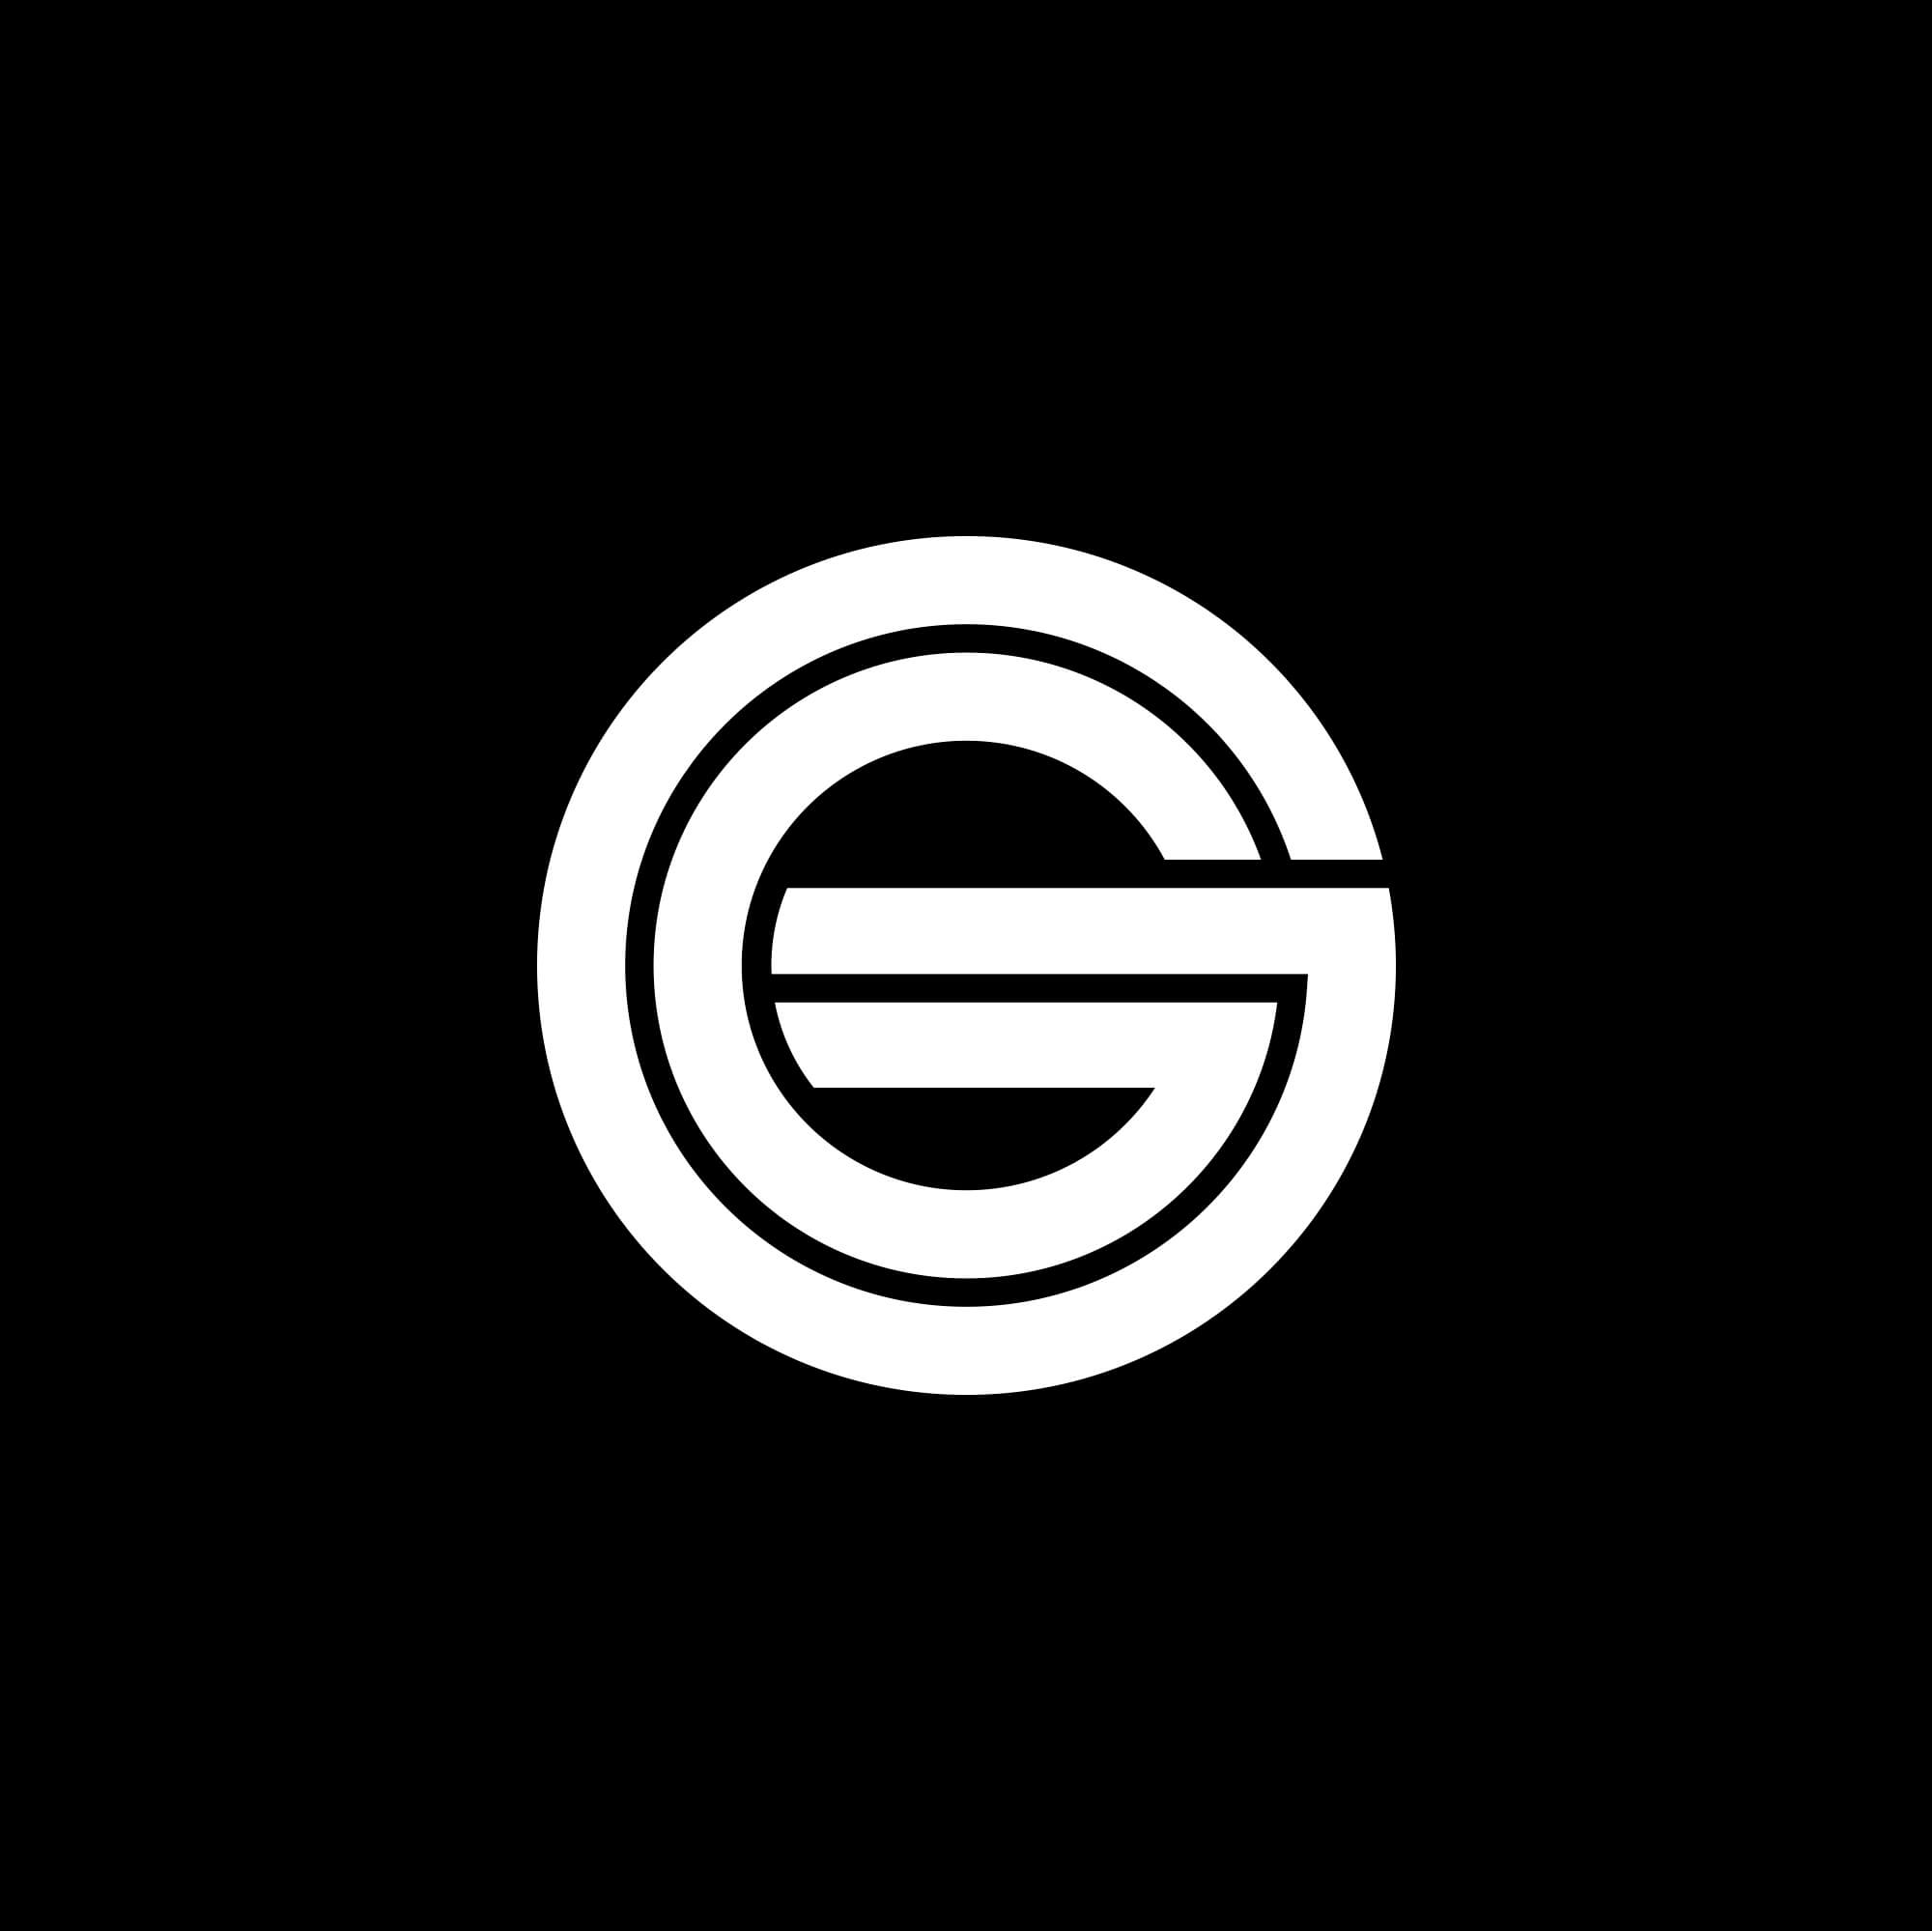 耳机制造商歌德Grado发布新Logo